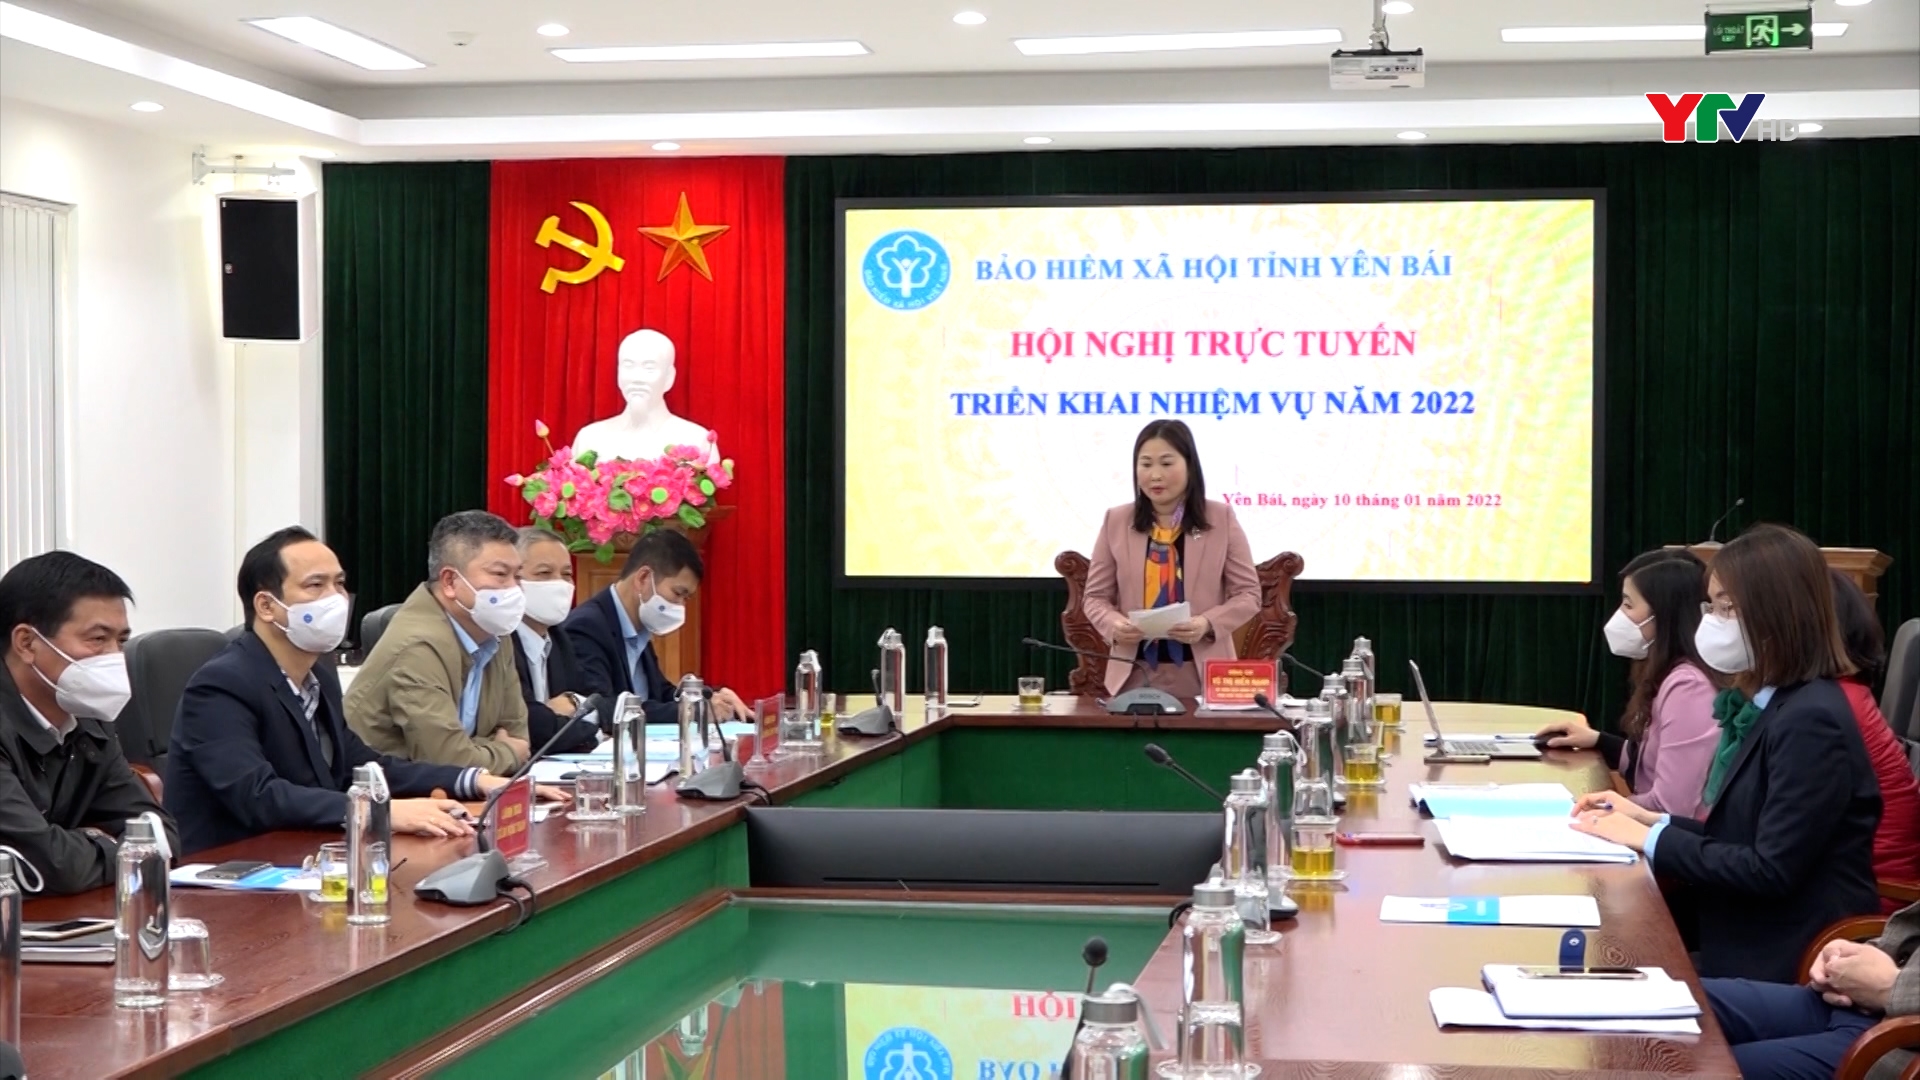 Bảo hiểm xã hội Việt Nam tổ chức Hội nghị trực tuyến triển khai nhiệm vụ năm 2022